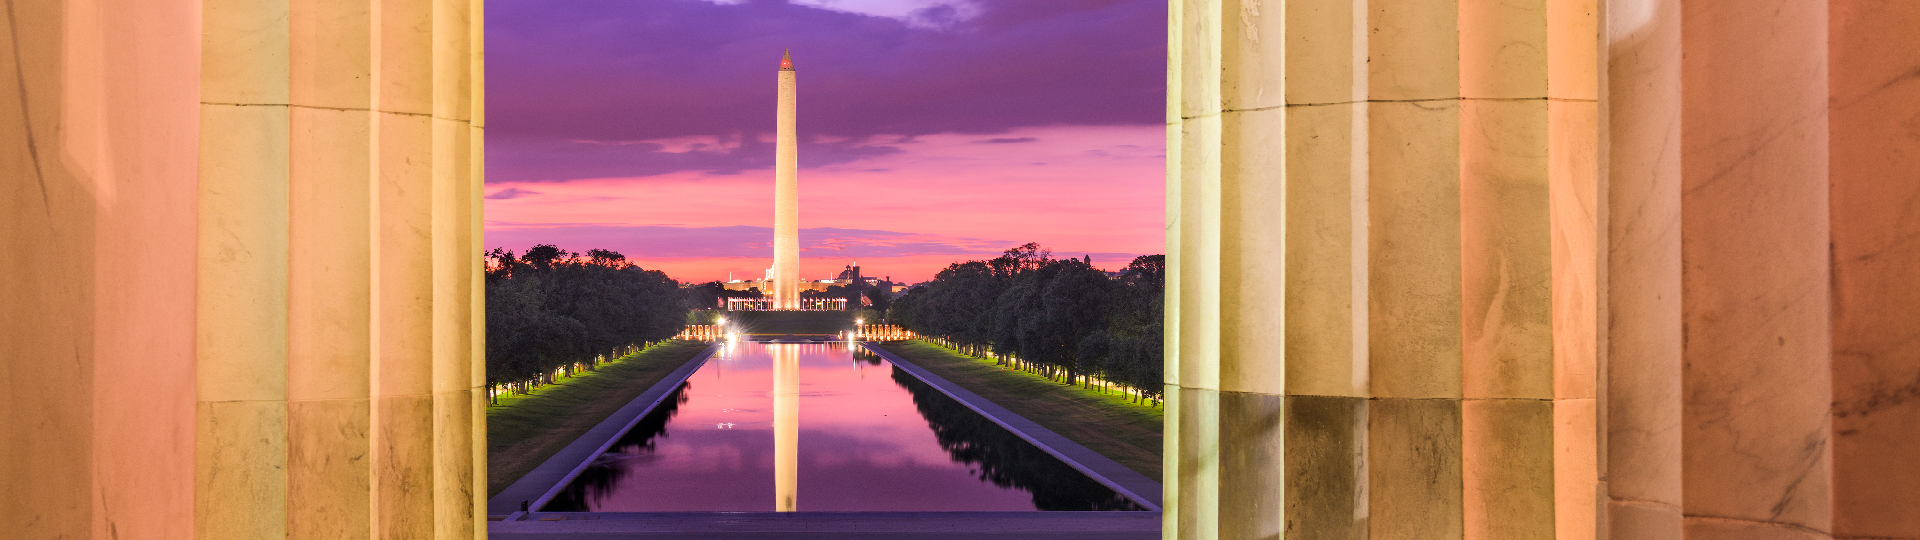 Washington Monument Hero Image